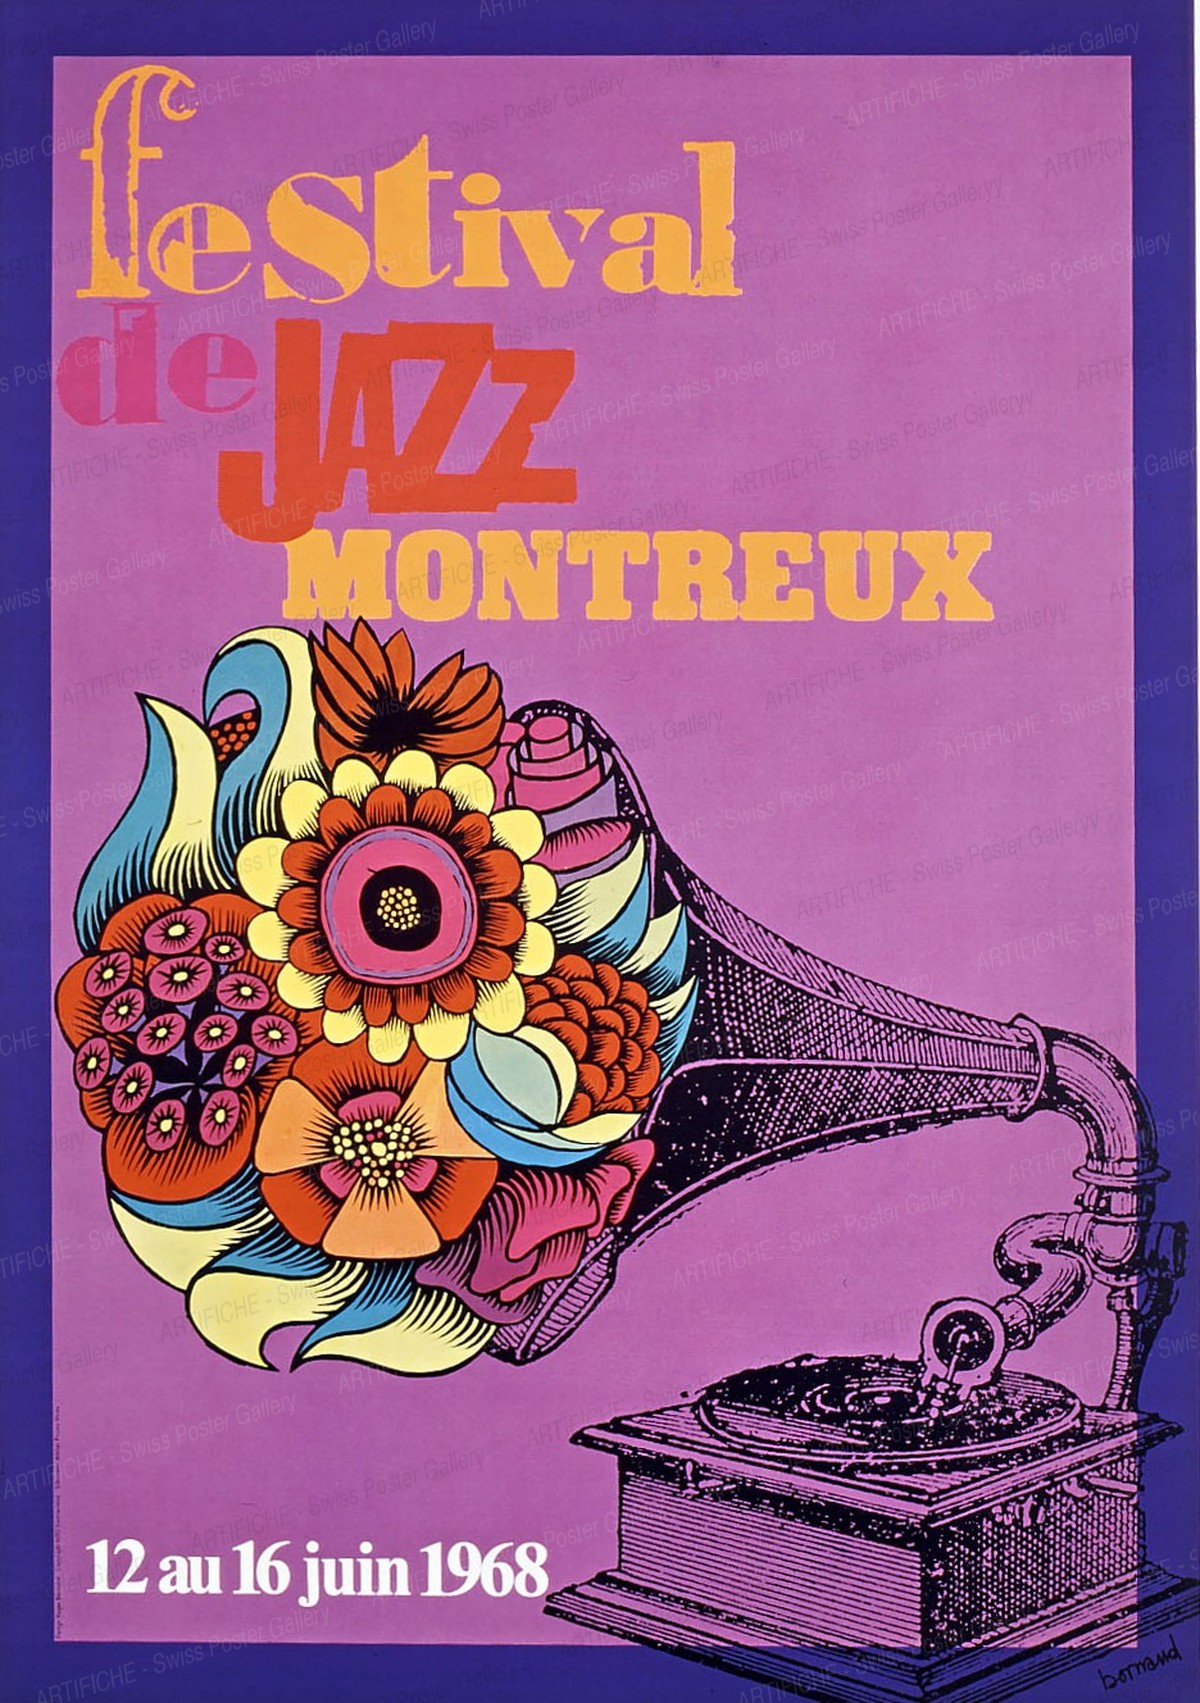 Festival de Jazz Montreux – 12 au 16 juin 1968, Roger Bornand